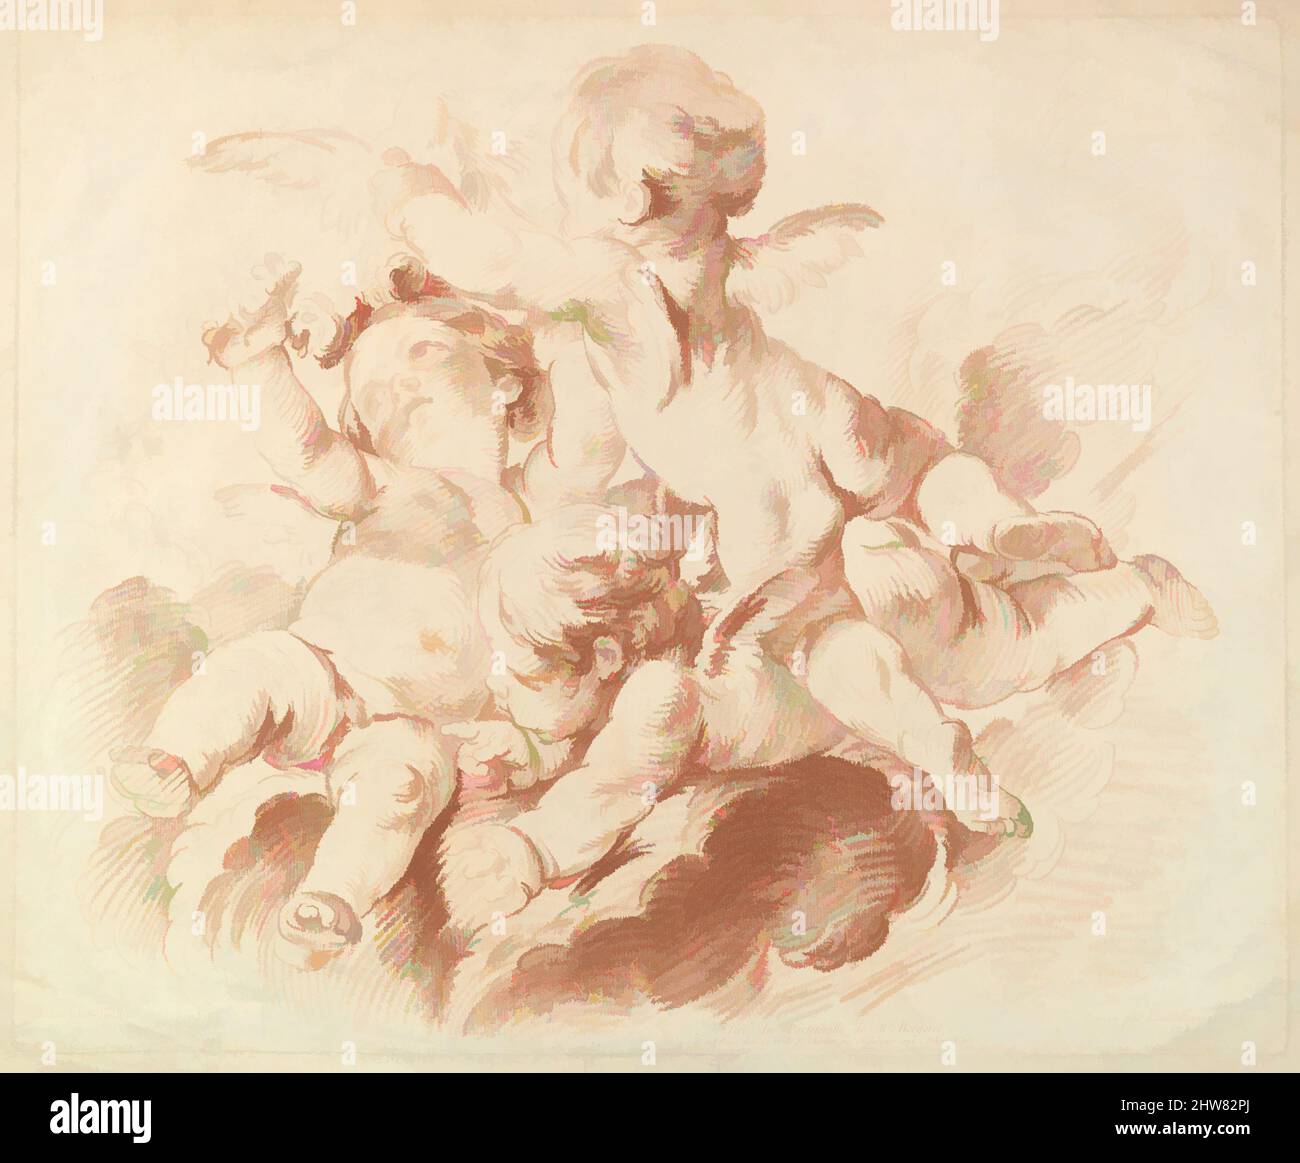 Kunst inspiriert von L'Air (The Air): Eine Gruppe von drei Putti auf Wolken, 18.. Jahrhundert, Crayon-Manner-Gravur in roter Tinte, Blatt: 20 5/8 x 15 7/8 Zoll (52,4 x 40,3 cm), Drucke, Louis Marin Bonnet (Französisch, Paris 1736–1793 Saint-Mandé, Val-de-Marne), After François Boucher (Französisch, Paris 1703–, Klassische Werke, die von Artotop mit einem Schuss Moderne modernisiert wurden. Formen, Farbe und Wert, auffällige visuelle Wirkung auf Kunst. Emotionen durch Freiheit von Kunstwerken auf zeitgemäße Weise. Eine zeitlose Botschaft, die eine wild kreative neue Richtung verfolgt. Künstler, die sich dem digitalen Medium zuwenden und die Artotop NFT erschaffen Stockfoto